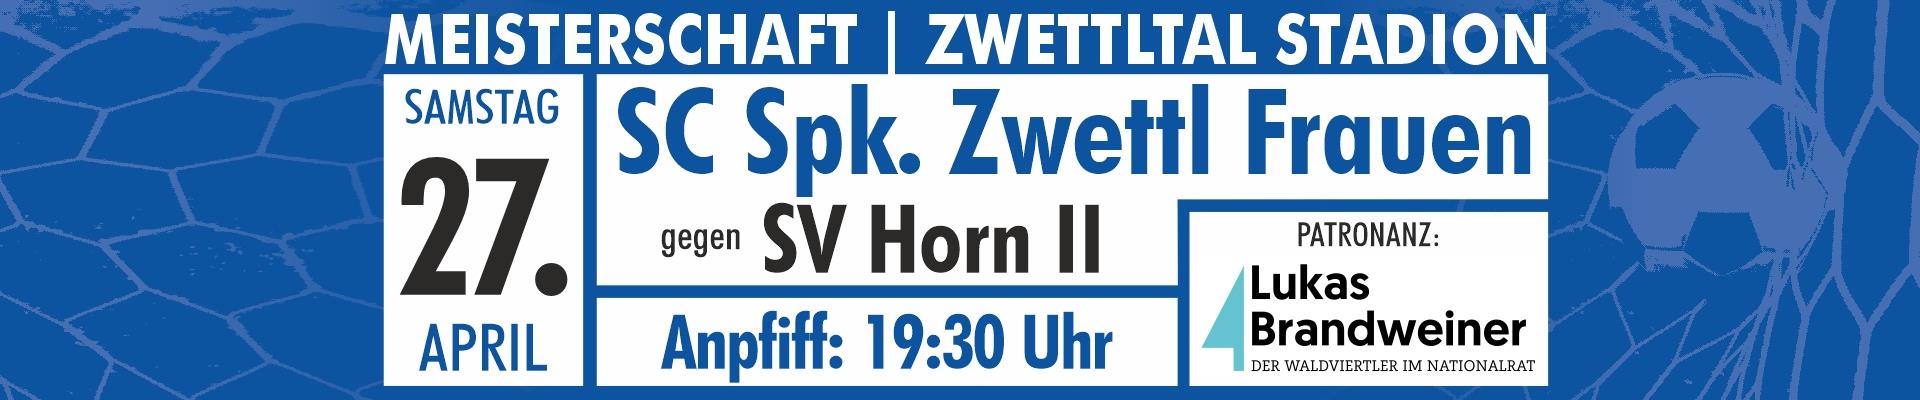 Spielvorschau - SC Sparkasse Zwettl Frauen - SV Horn II